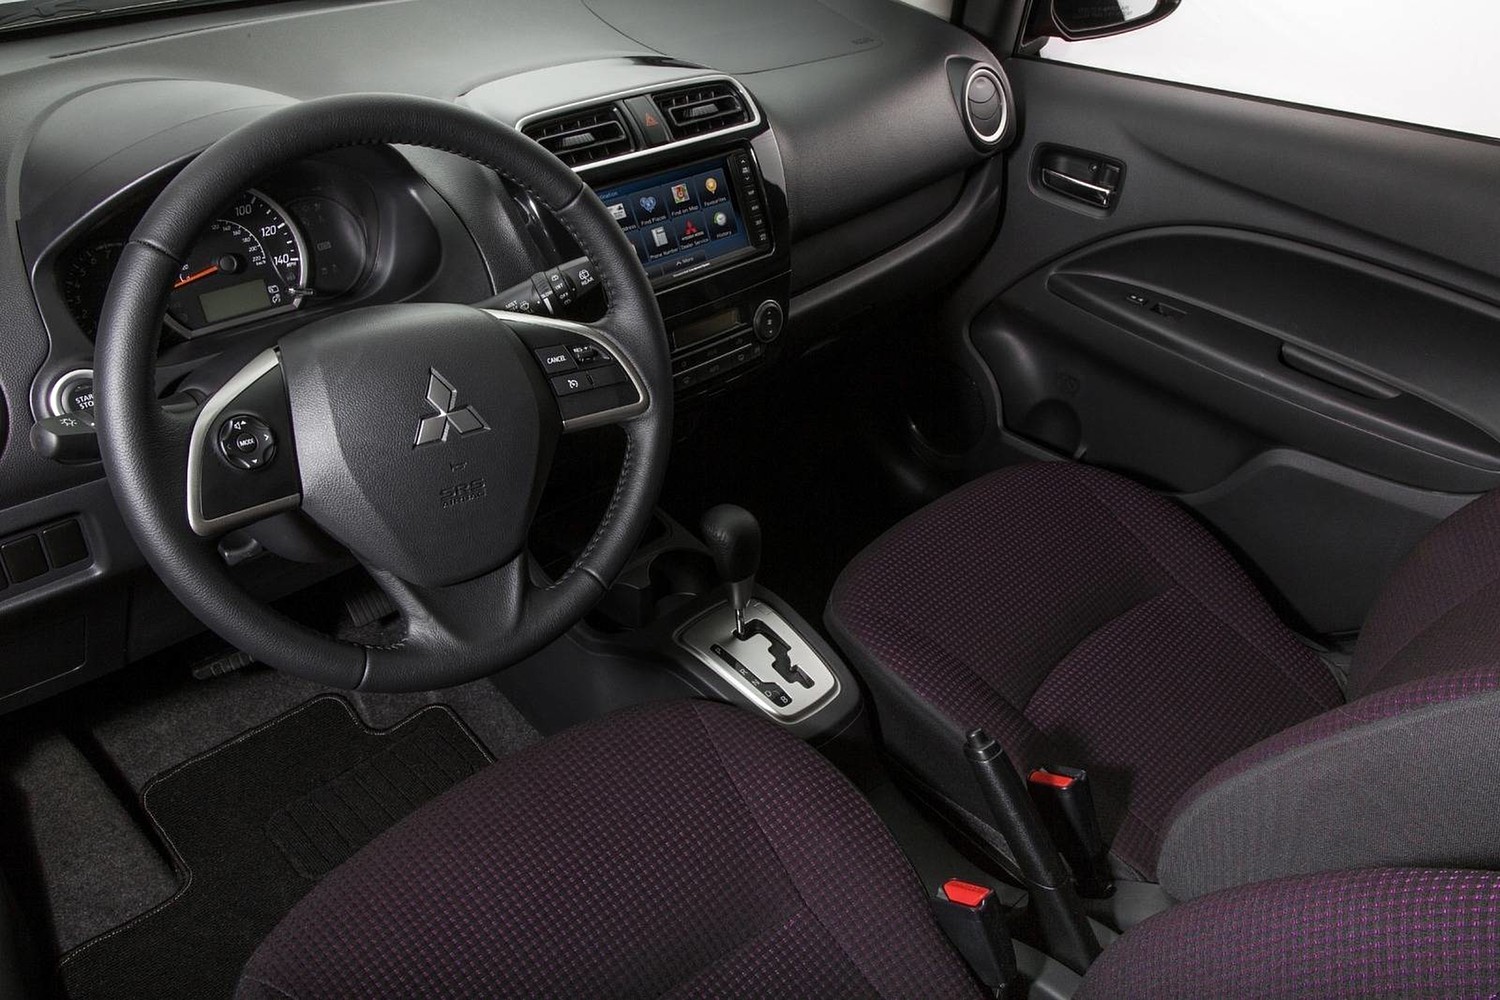 Mitsubishi Mirage ES 4dr Hatchback Interior (2014 model year shown)